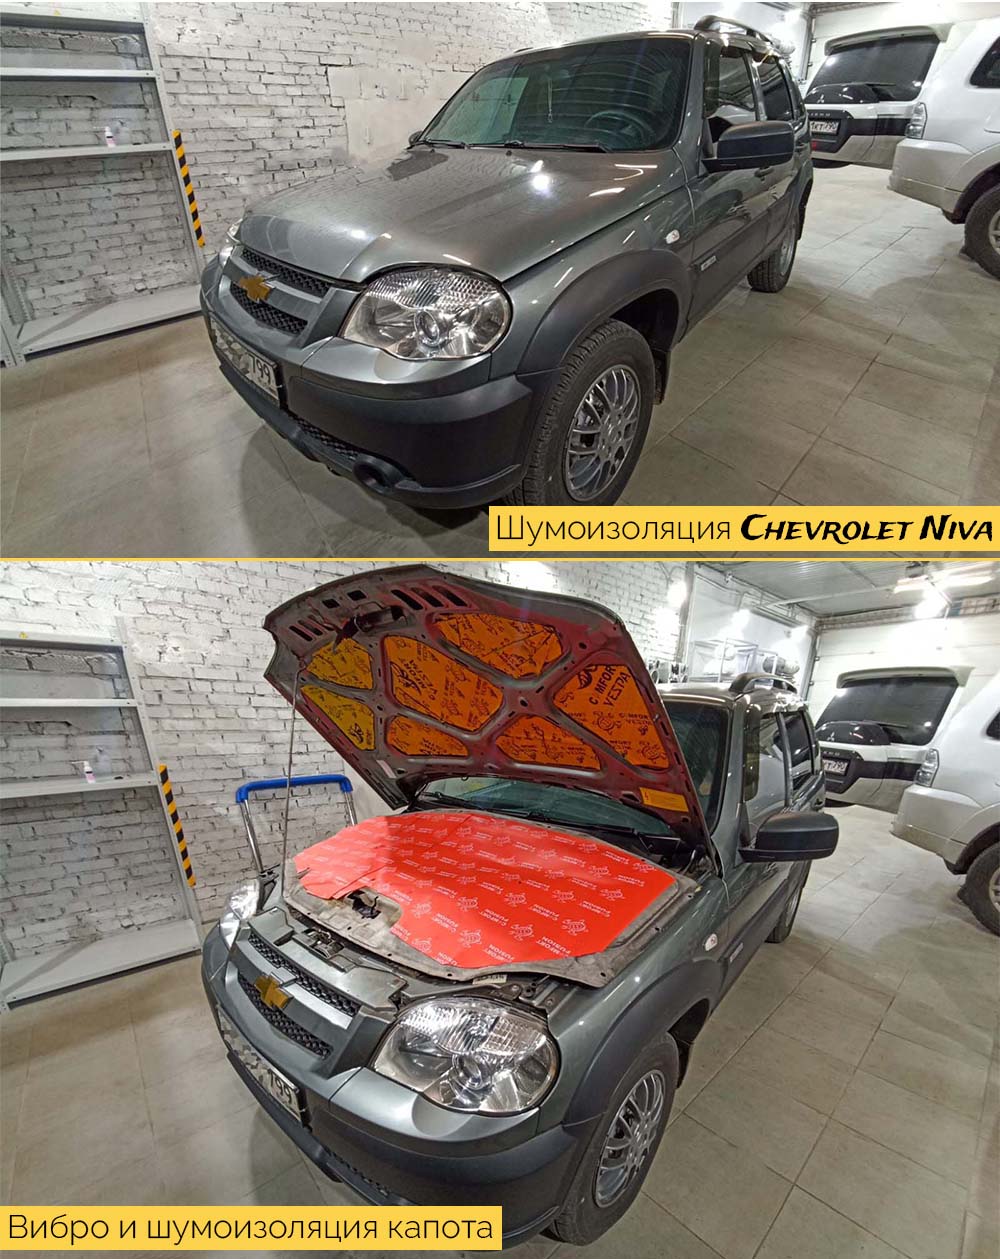 Шумоизоляция Chevrolet Niva - купить готовый комплект